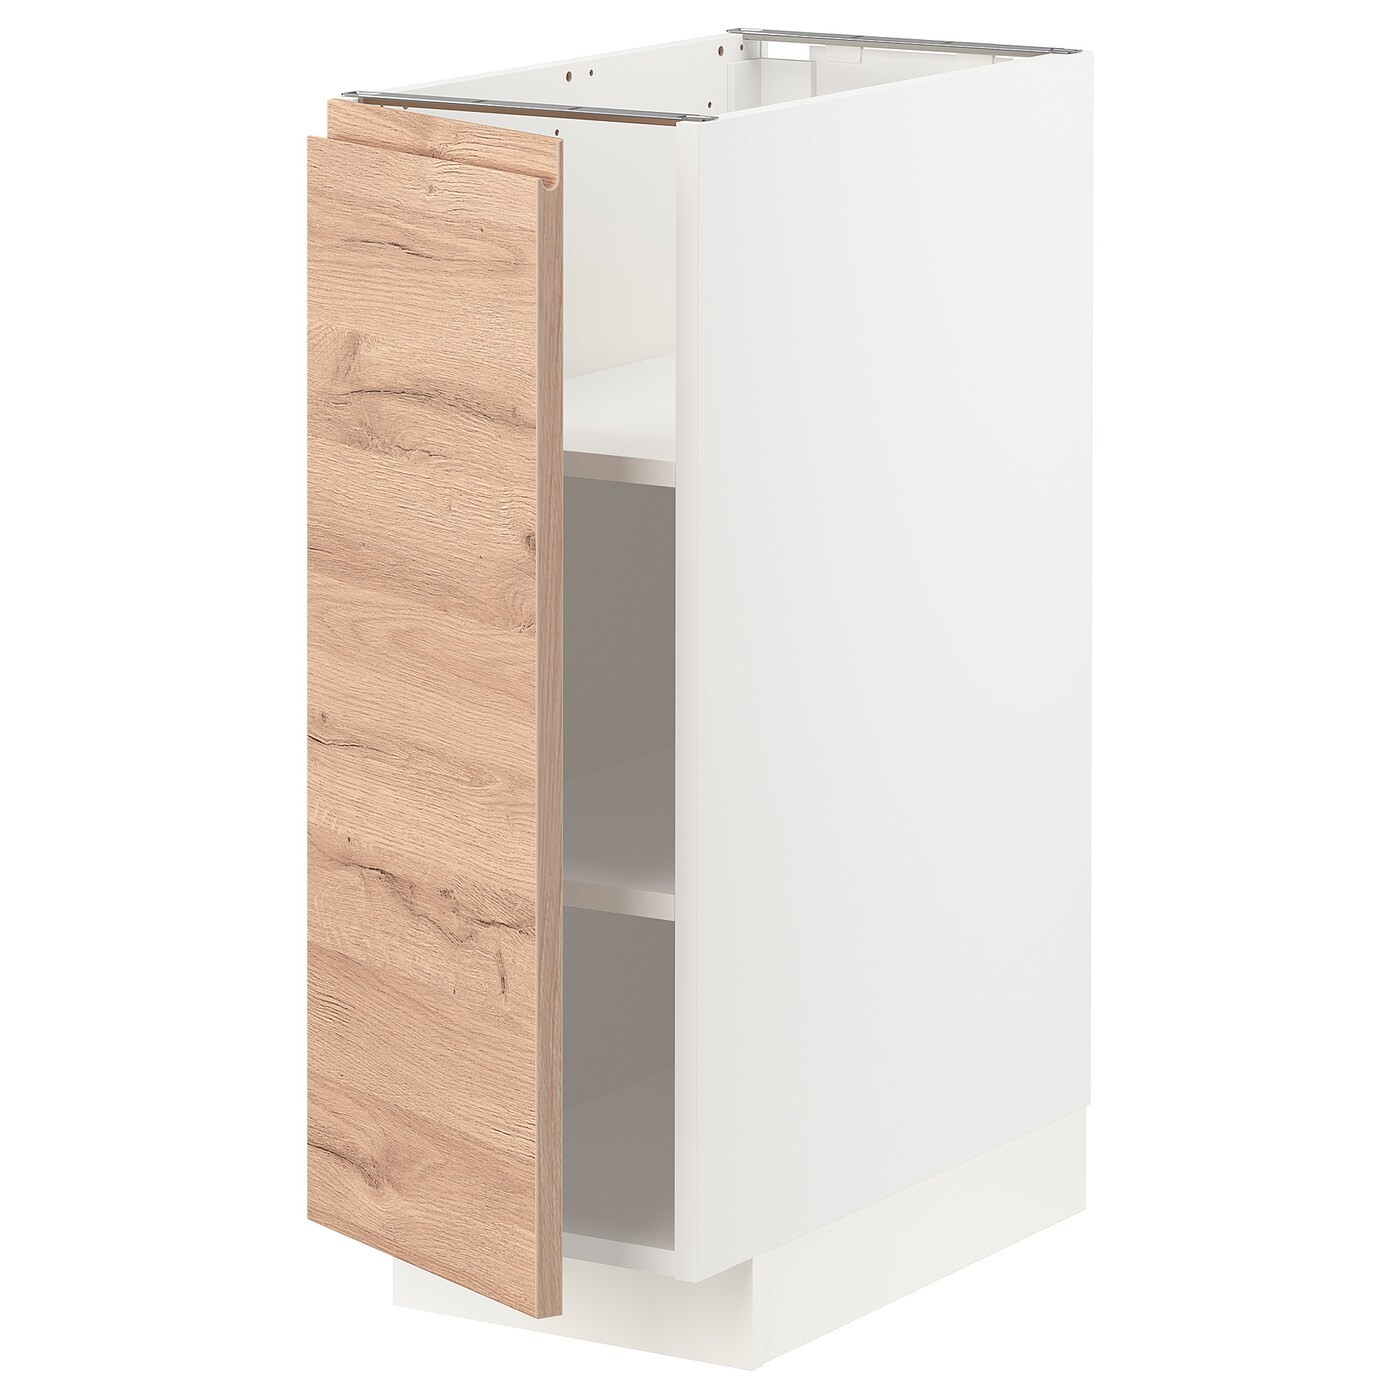 IKEA METOD МЕТОД Напольный шкаф с полками, белый / Voxtorp имитация дуб, 30x60 см 39463141 | 394.631.41